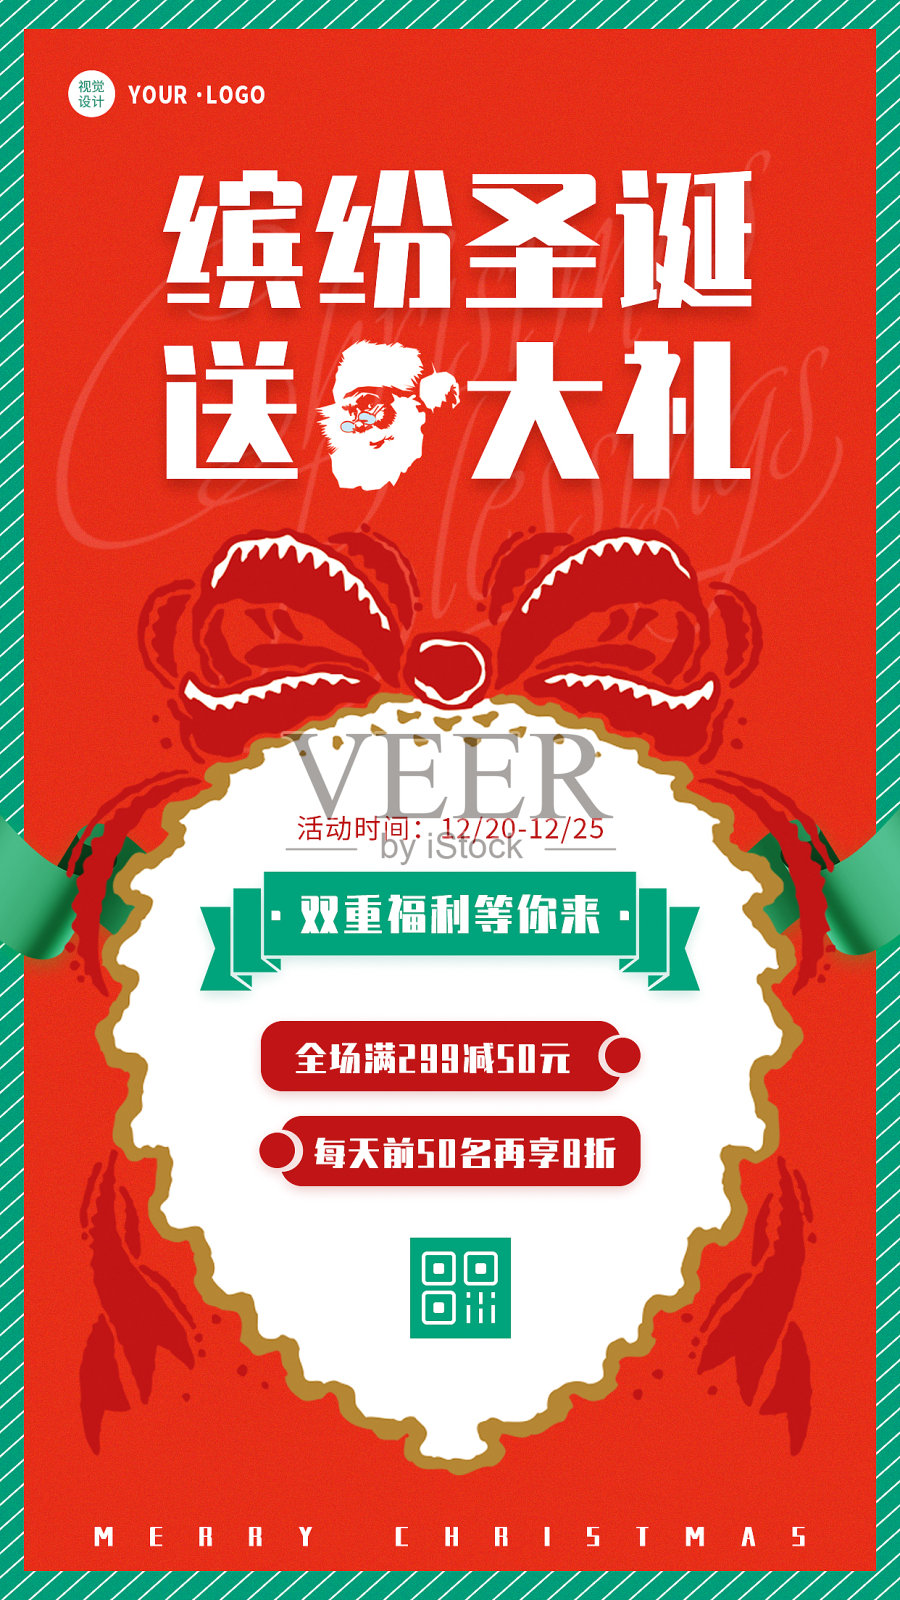 红色大气扁平圣诞节节日促销活动宣传手机海报设计模板素材